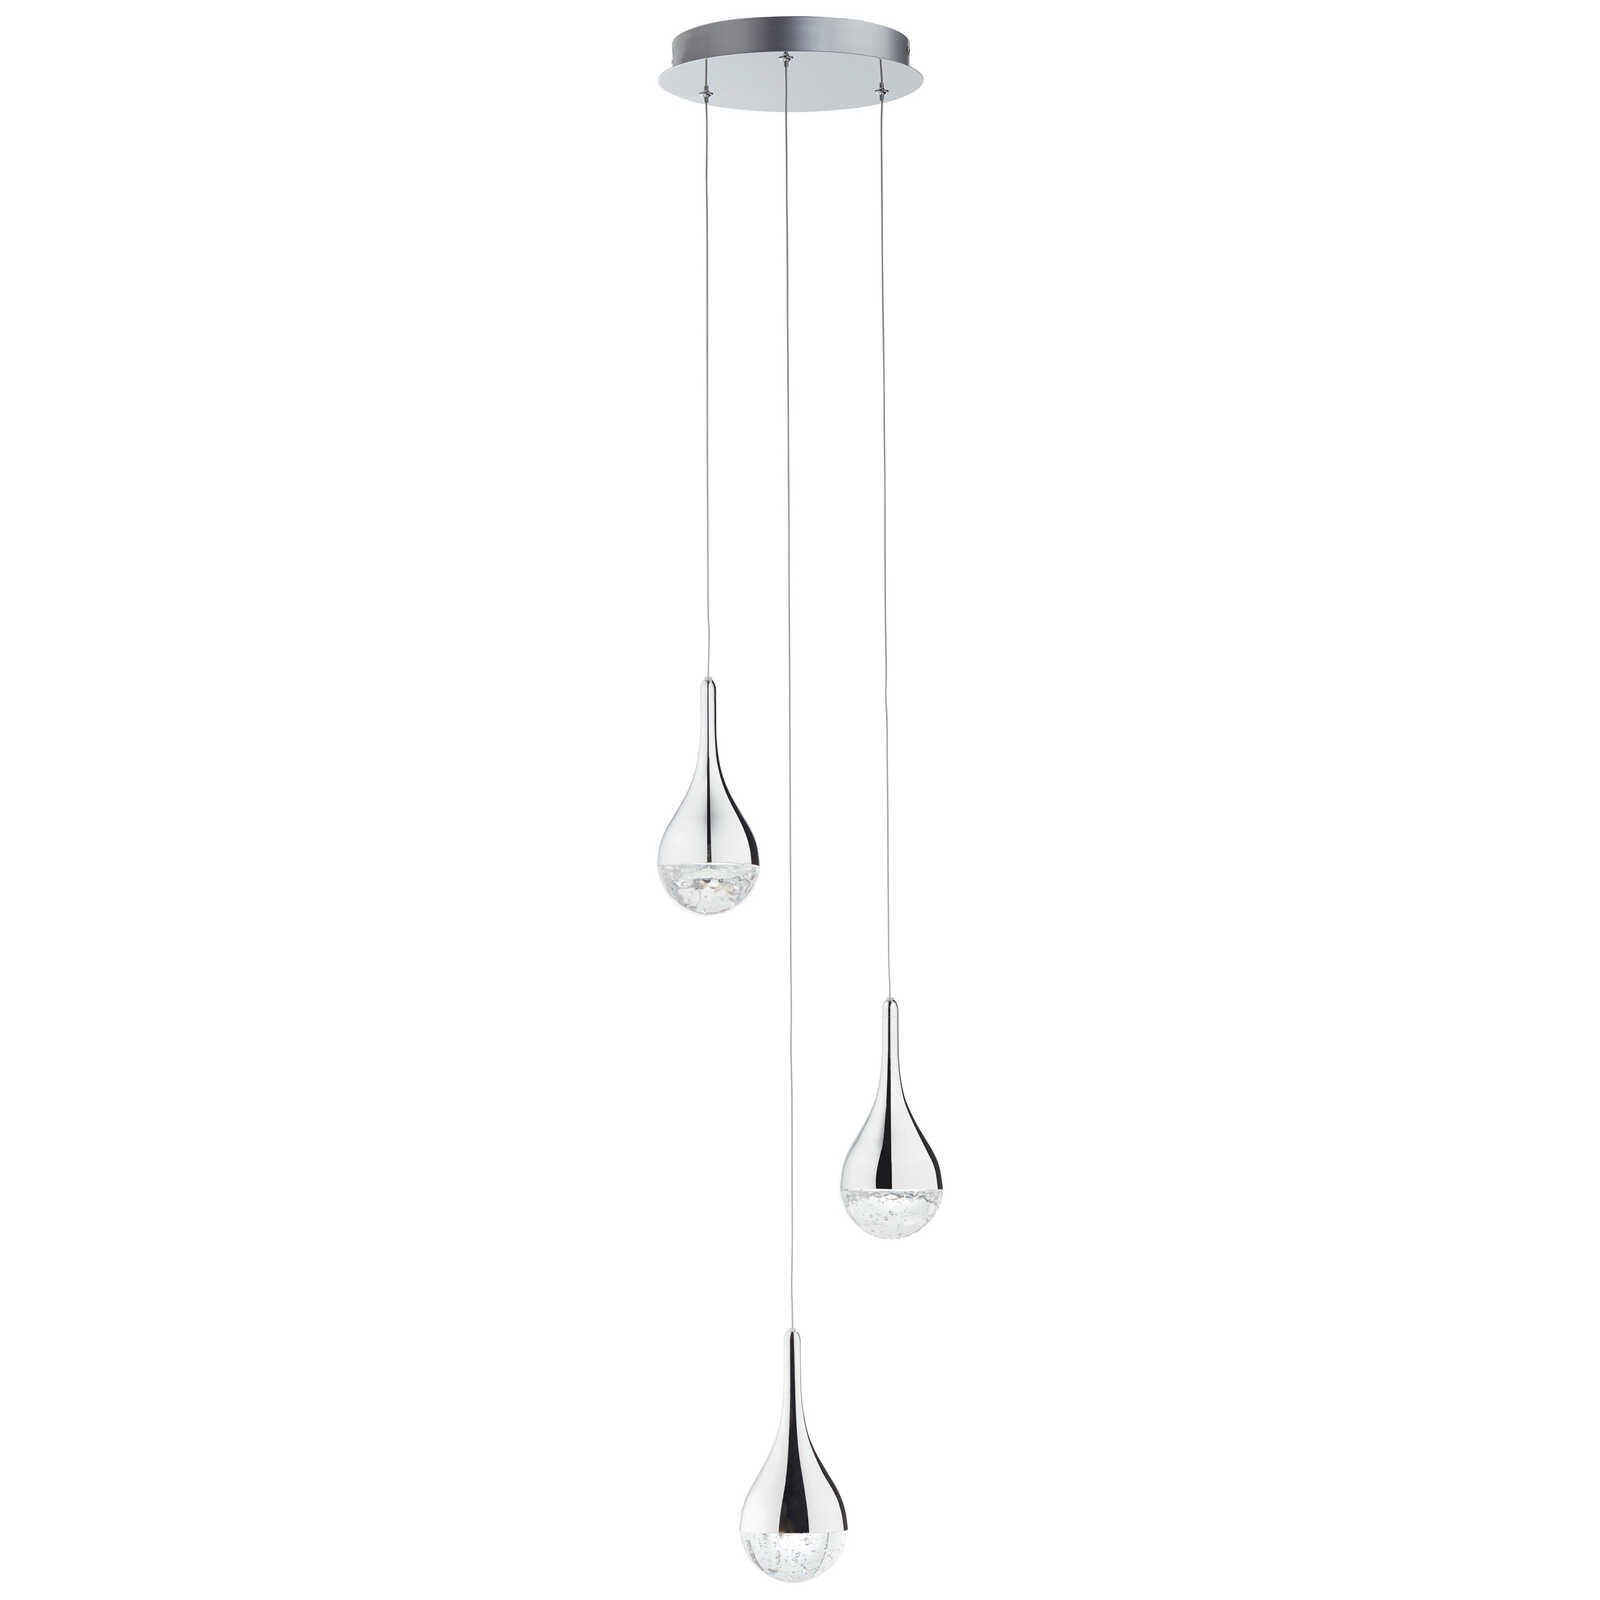             Glazen hanglamp - Gustav 1 - Metallic
        